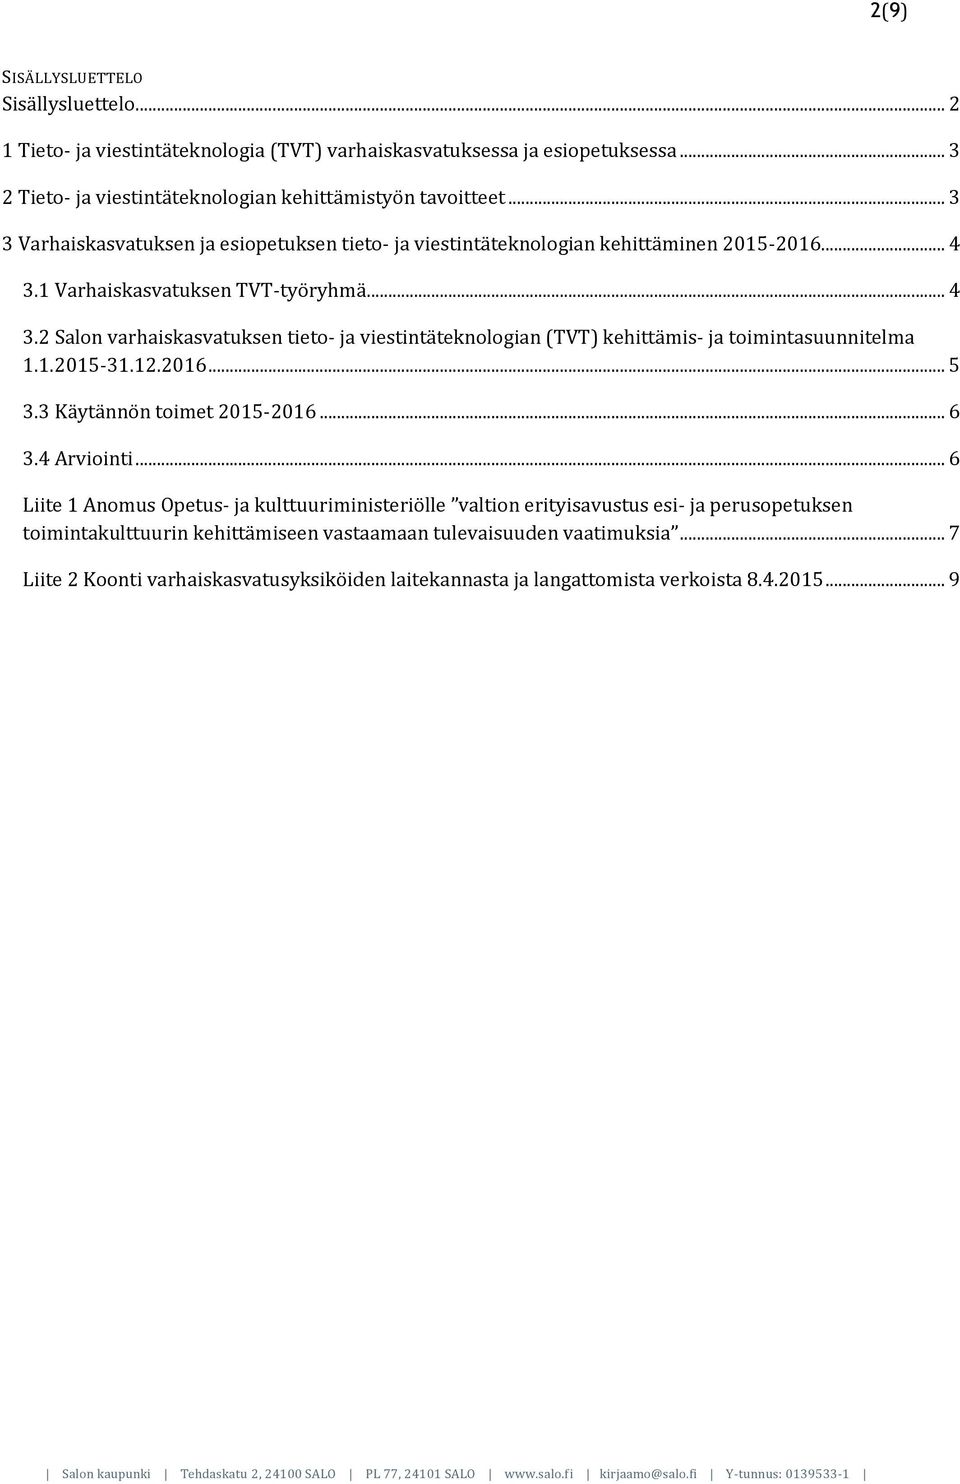 1 Varhaiskasvatuksen TVT-työryhmä... 4 3.2 Salon varhaiskasvatuksen tieto- ja viestintäteknologian (TVT) kehittämis- ja toimintasuunnitelma 1.1.2015-31.12.2016... 5 3.